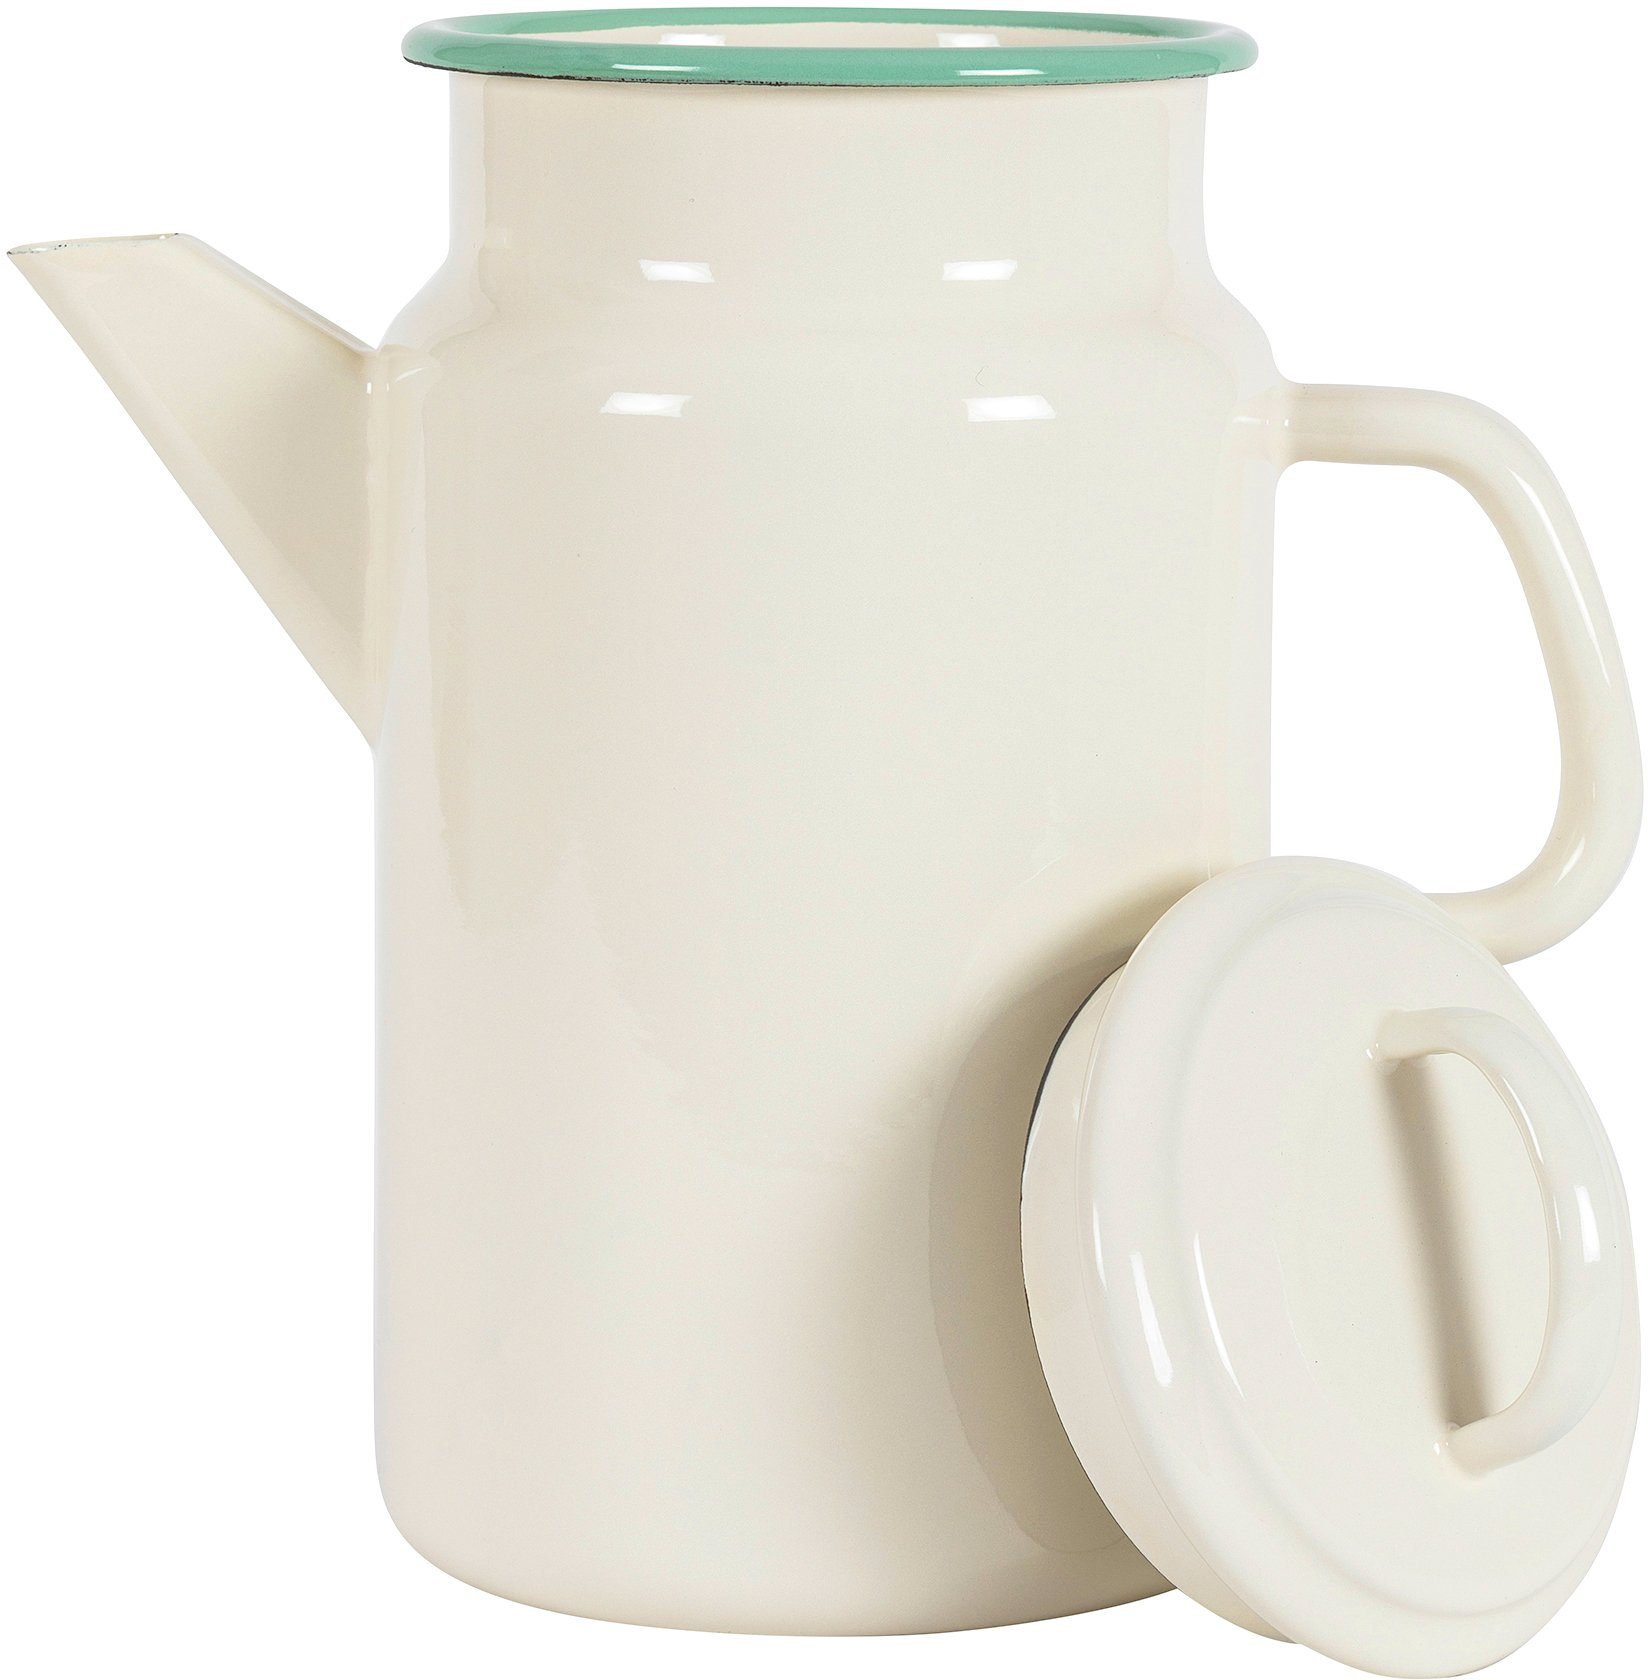 KOCKUMS® Teekanne Jernverk, 2 l, Retro-Design und Nachhaltigkeit einer Emaille, vereint Teekanne in beige